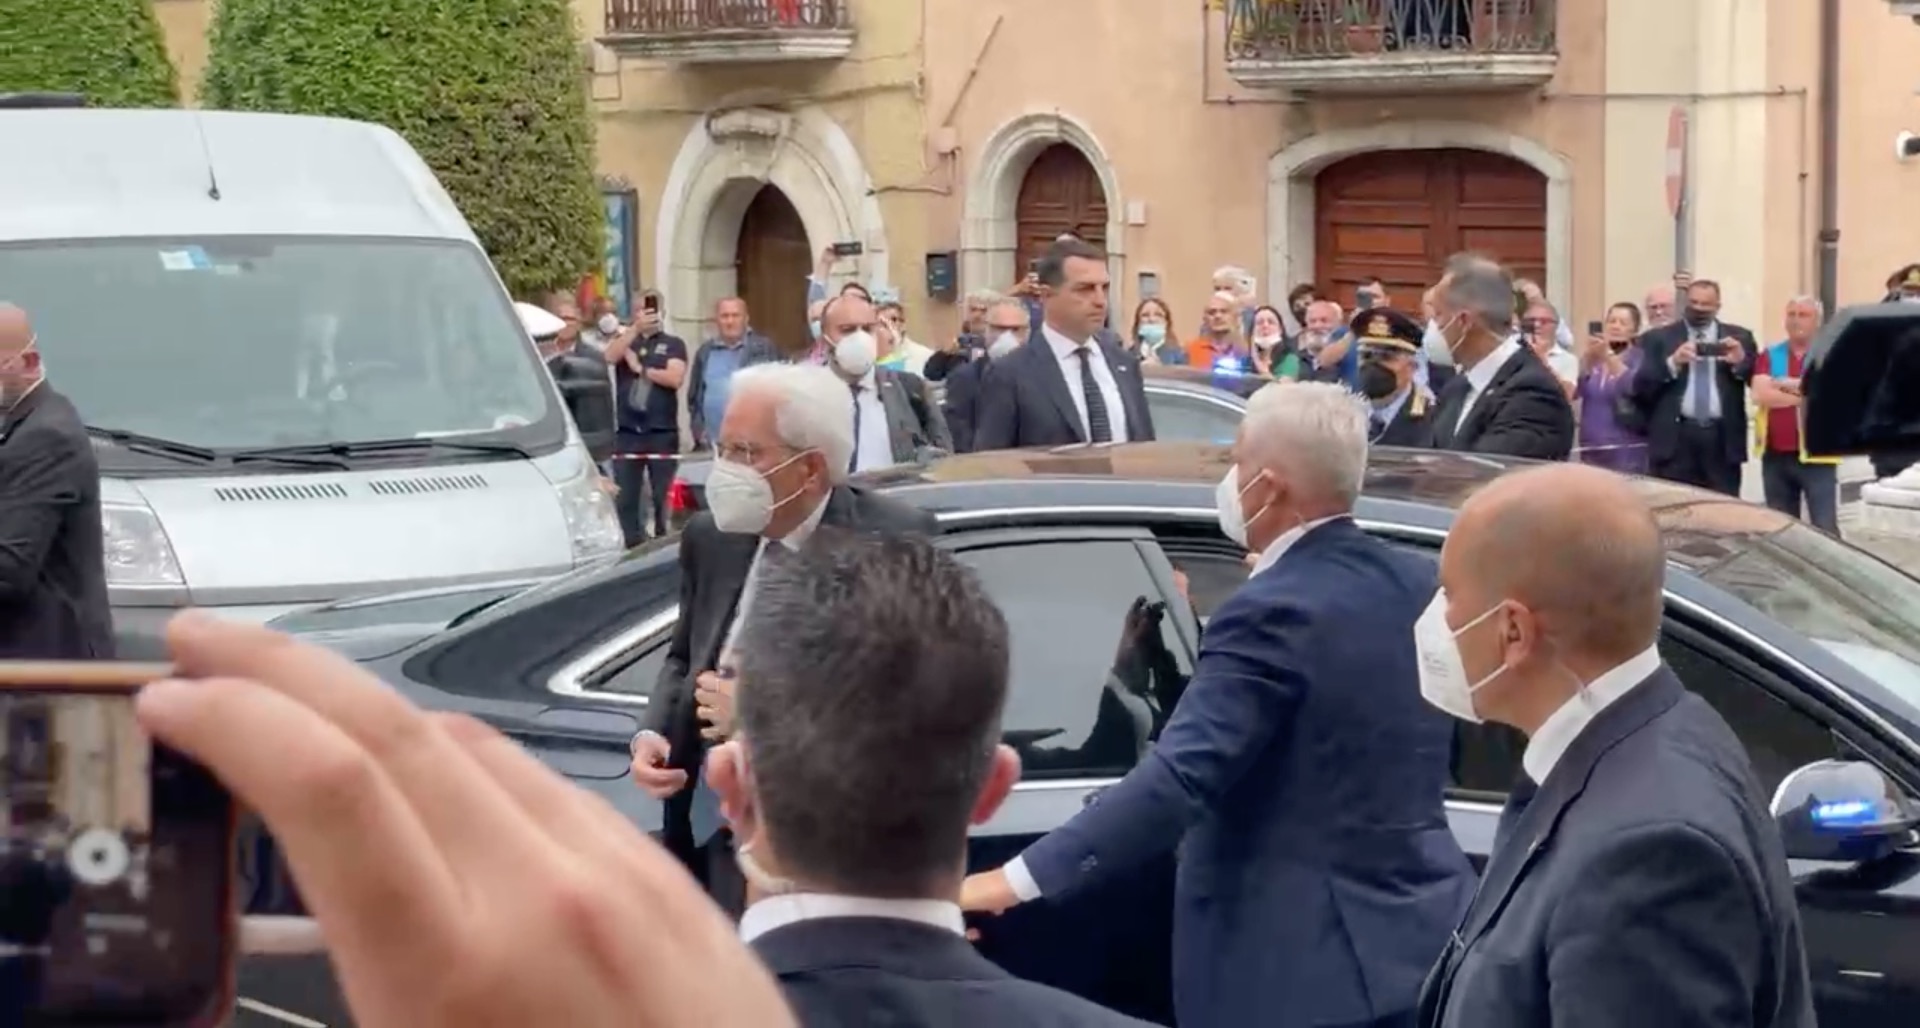 VIDEO/ Funerali di De Mita, Mattarella è appena atterrato a Nusco